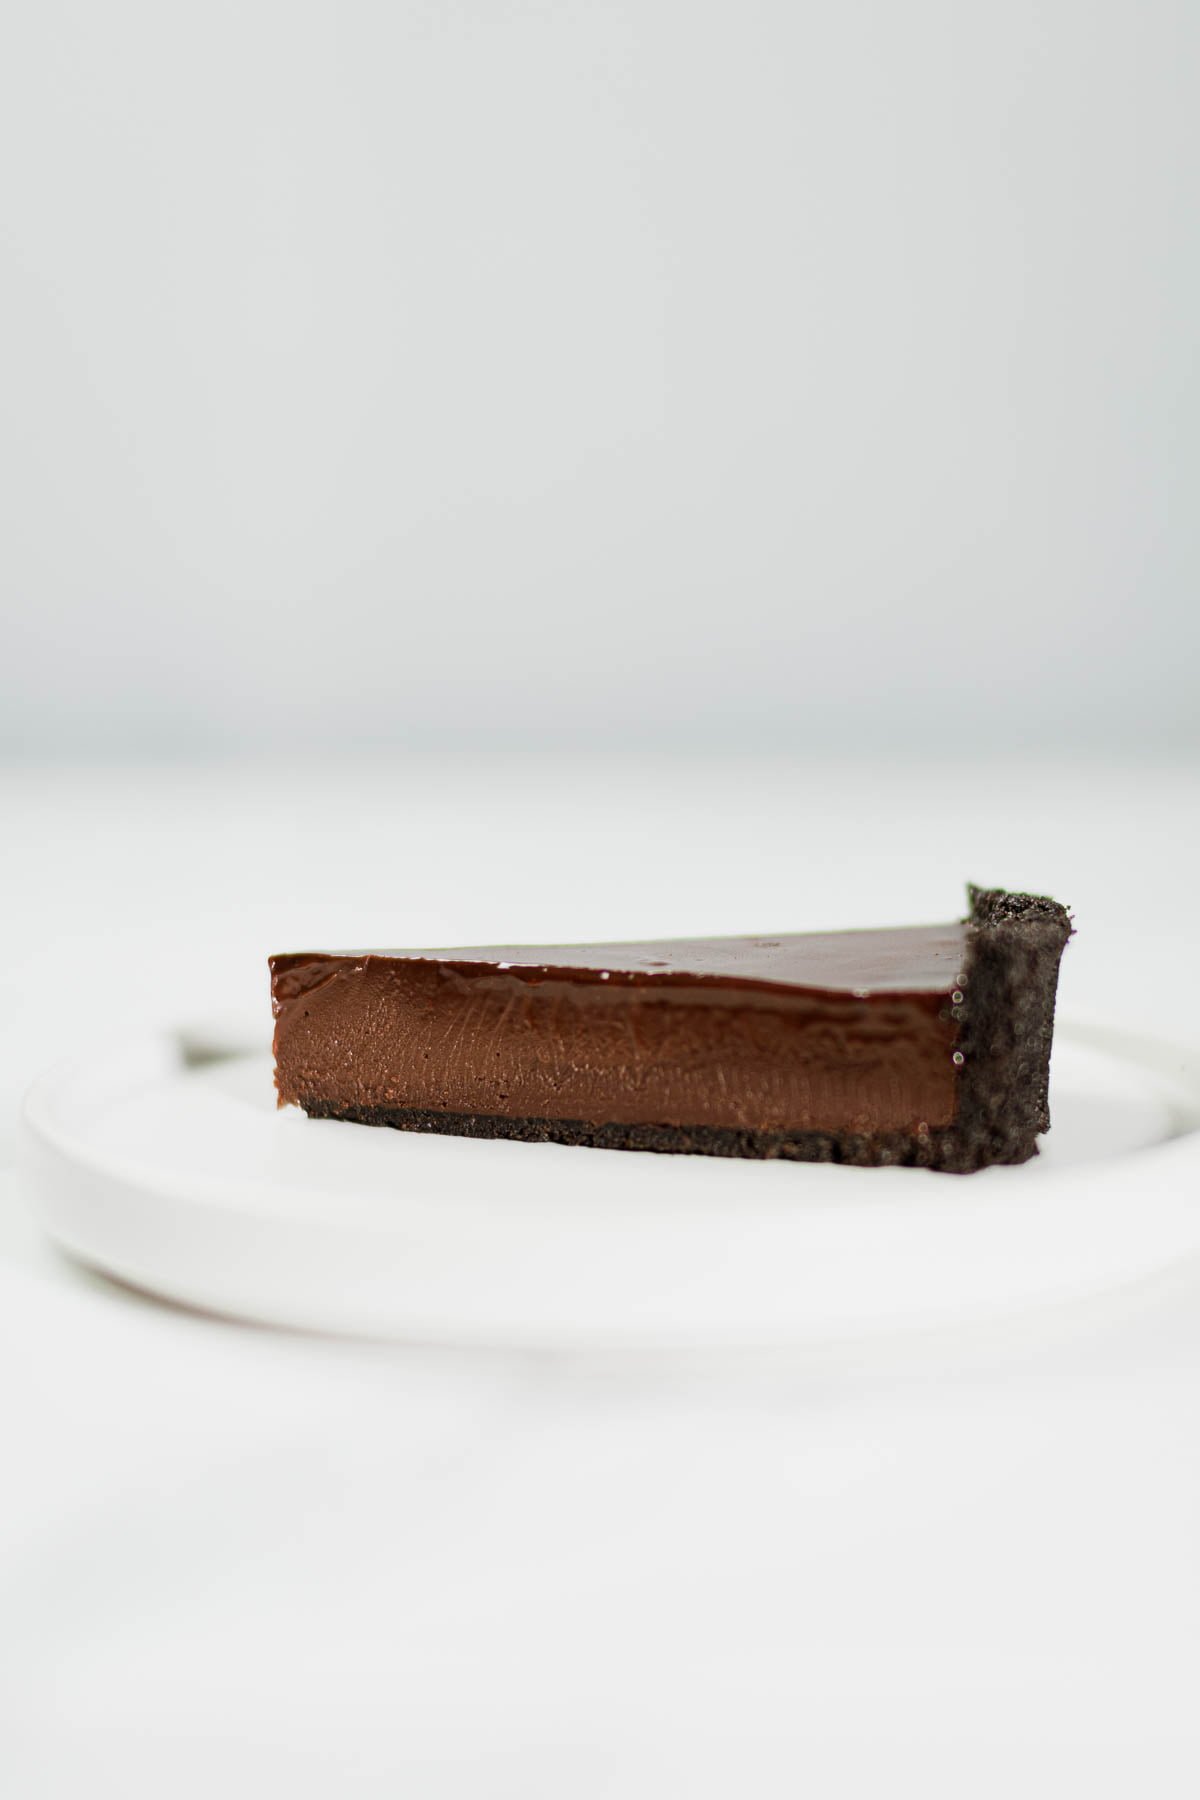 4-Ingredient No-Bake Chocolate Tart Recipe